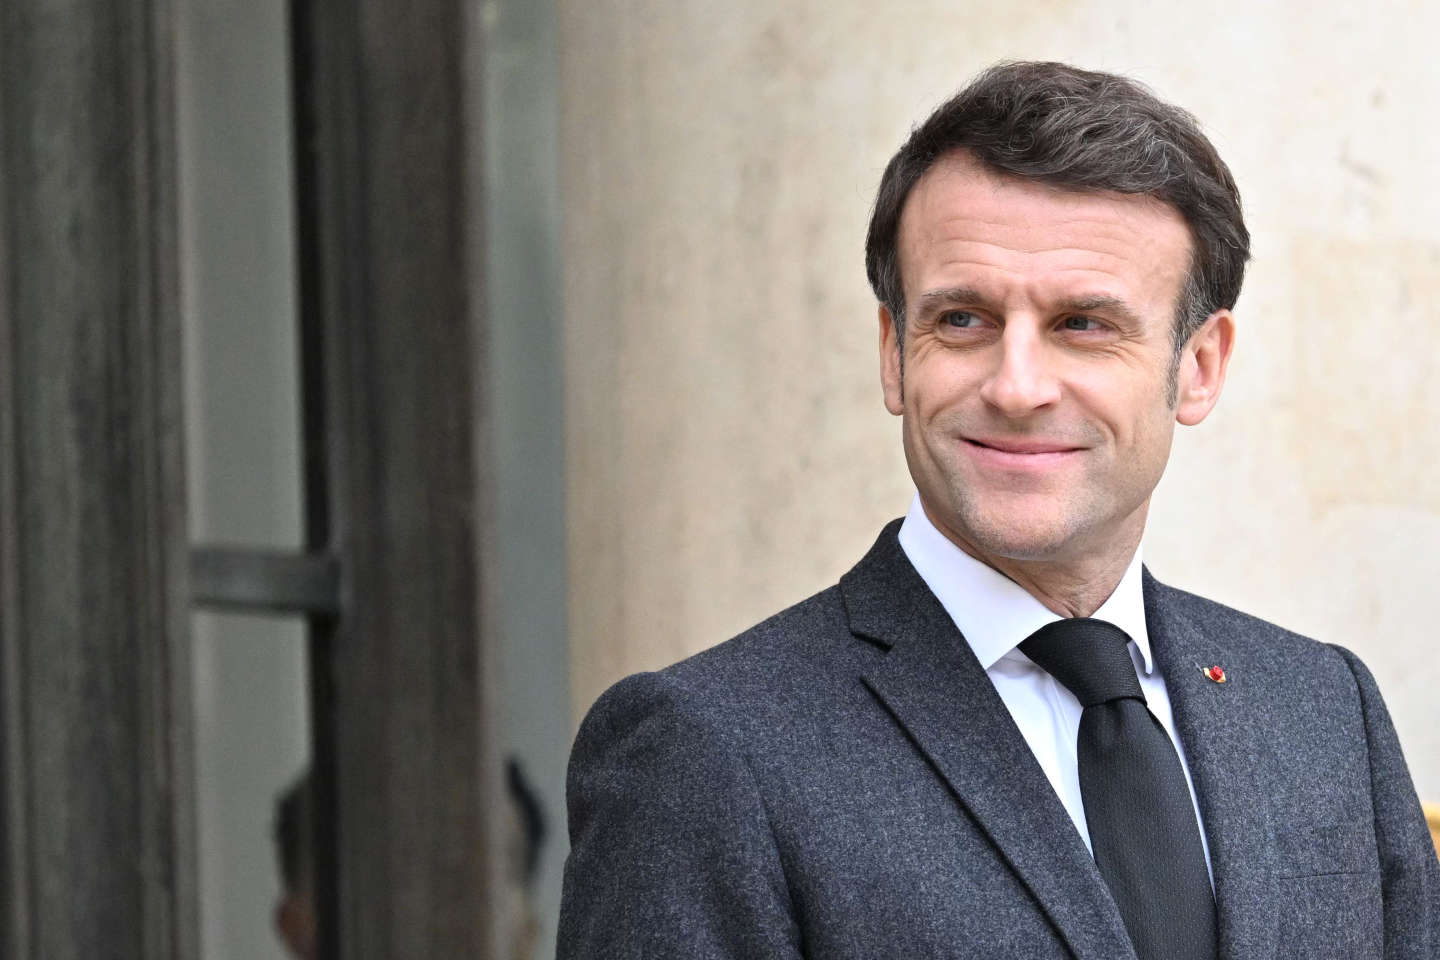 Climat : Emmanuel Macron veut « doubler le taux d’effort » pour la réduction des émissions de CO2